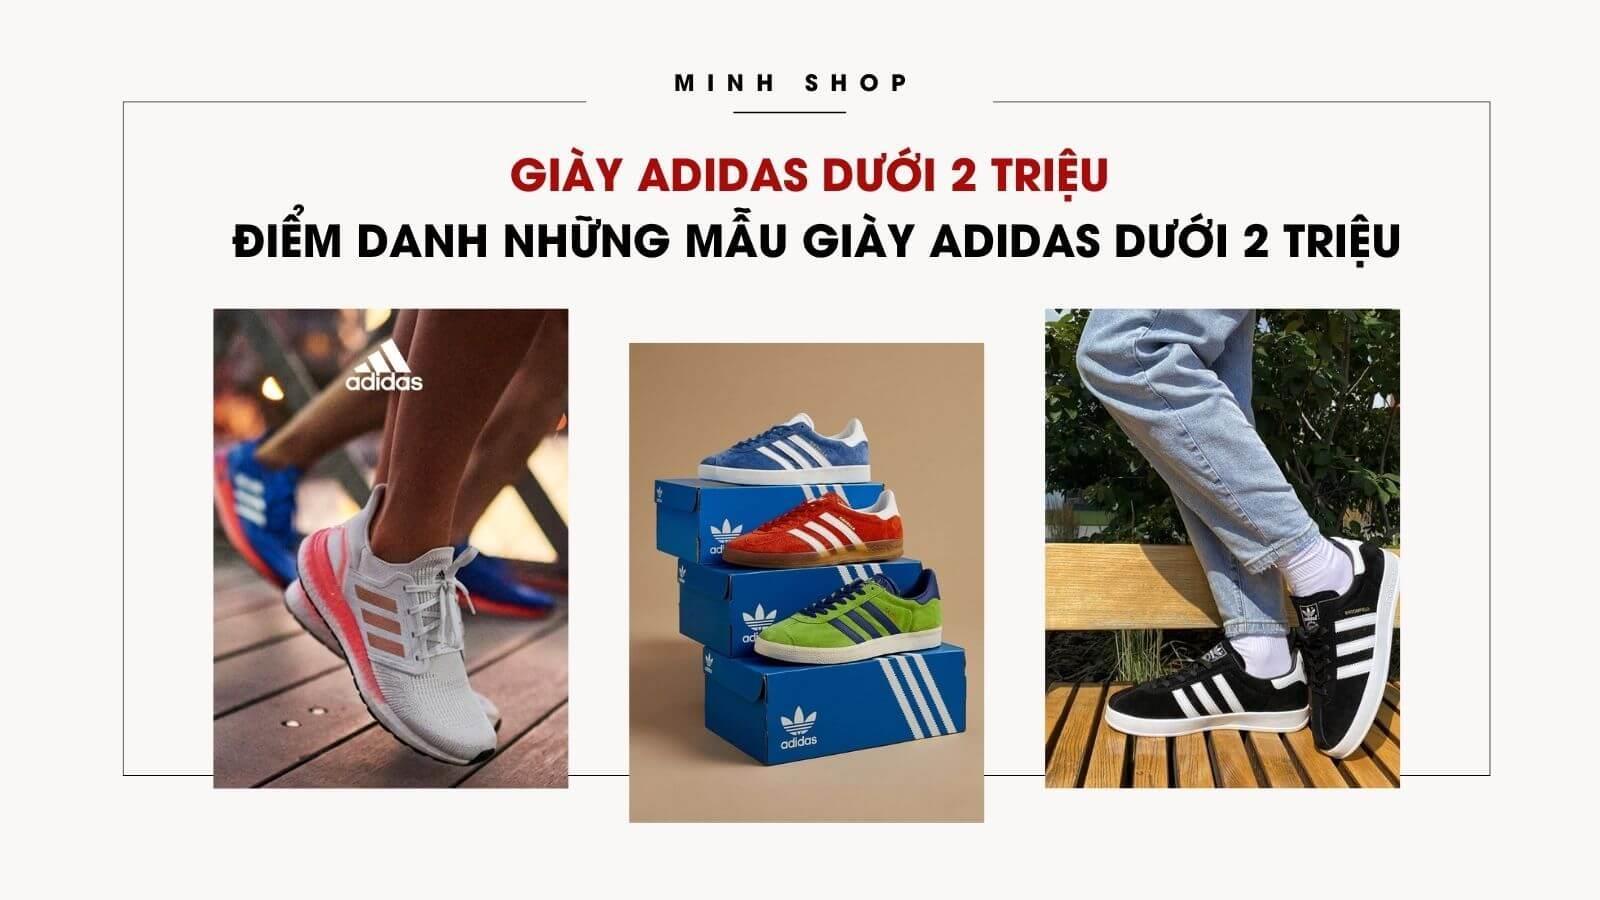 giay-adidas-duoi-2-trieu-diem-danh-nhung-mau-giay-adidas-chinh-hang-duoi-2-trieu